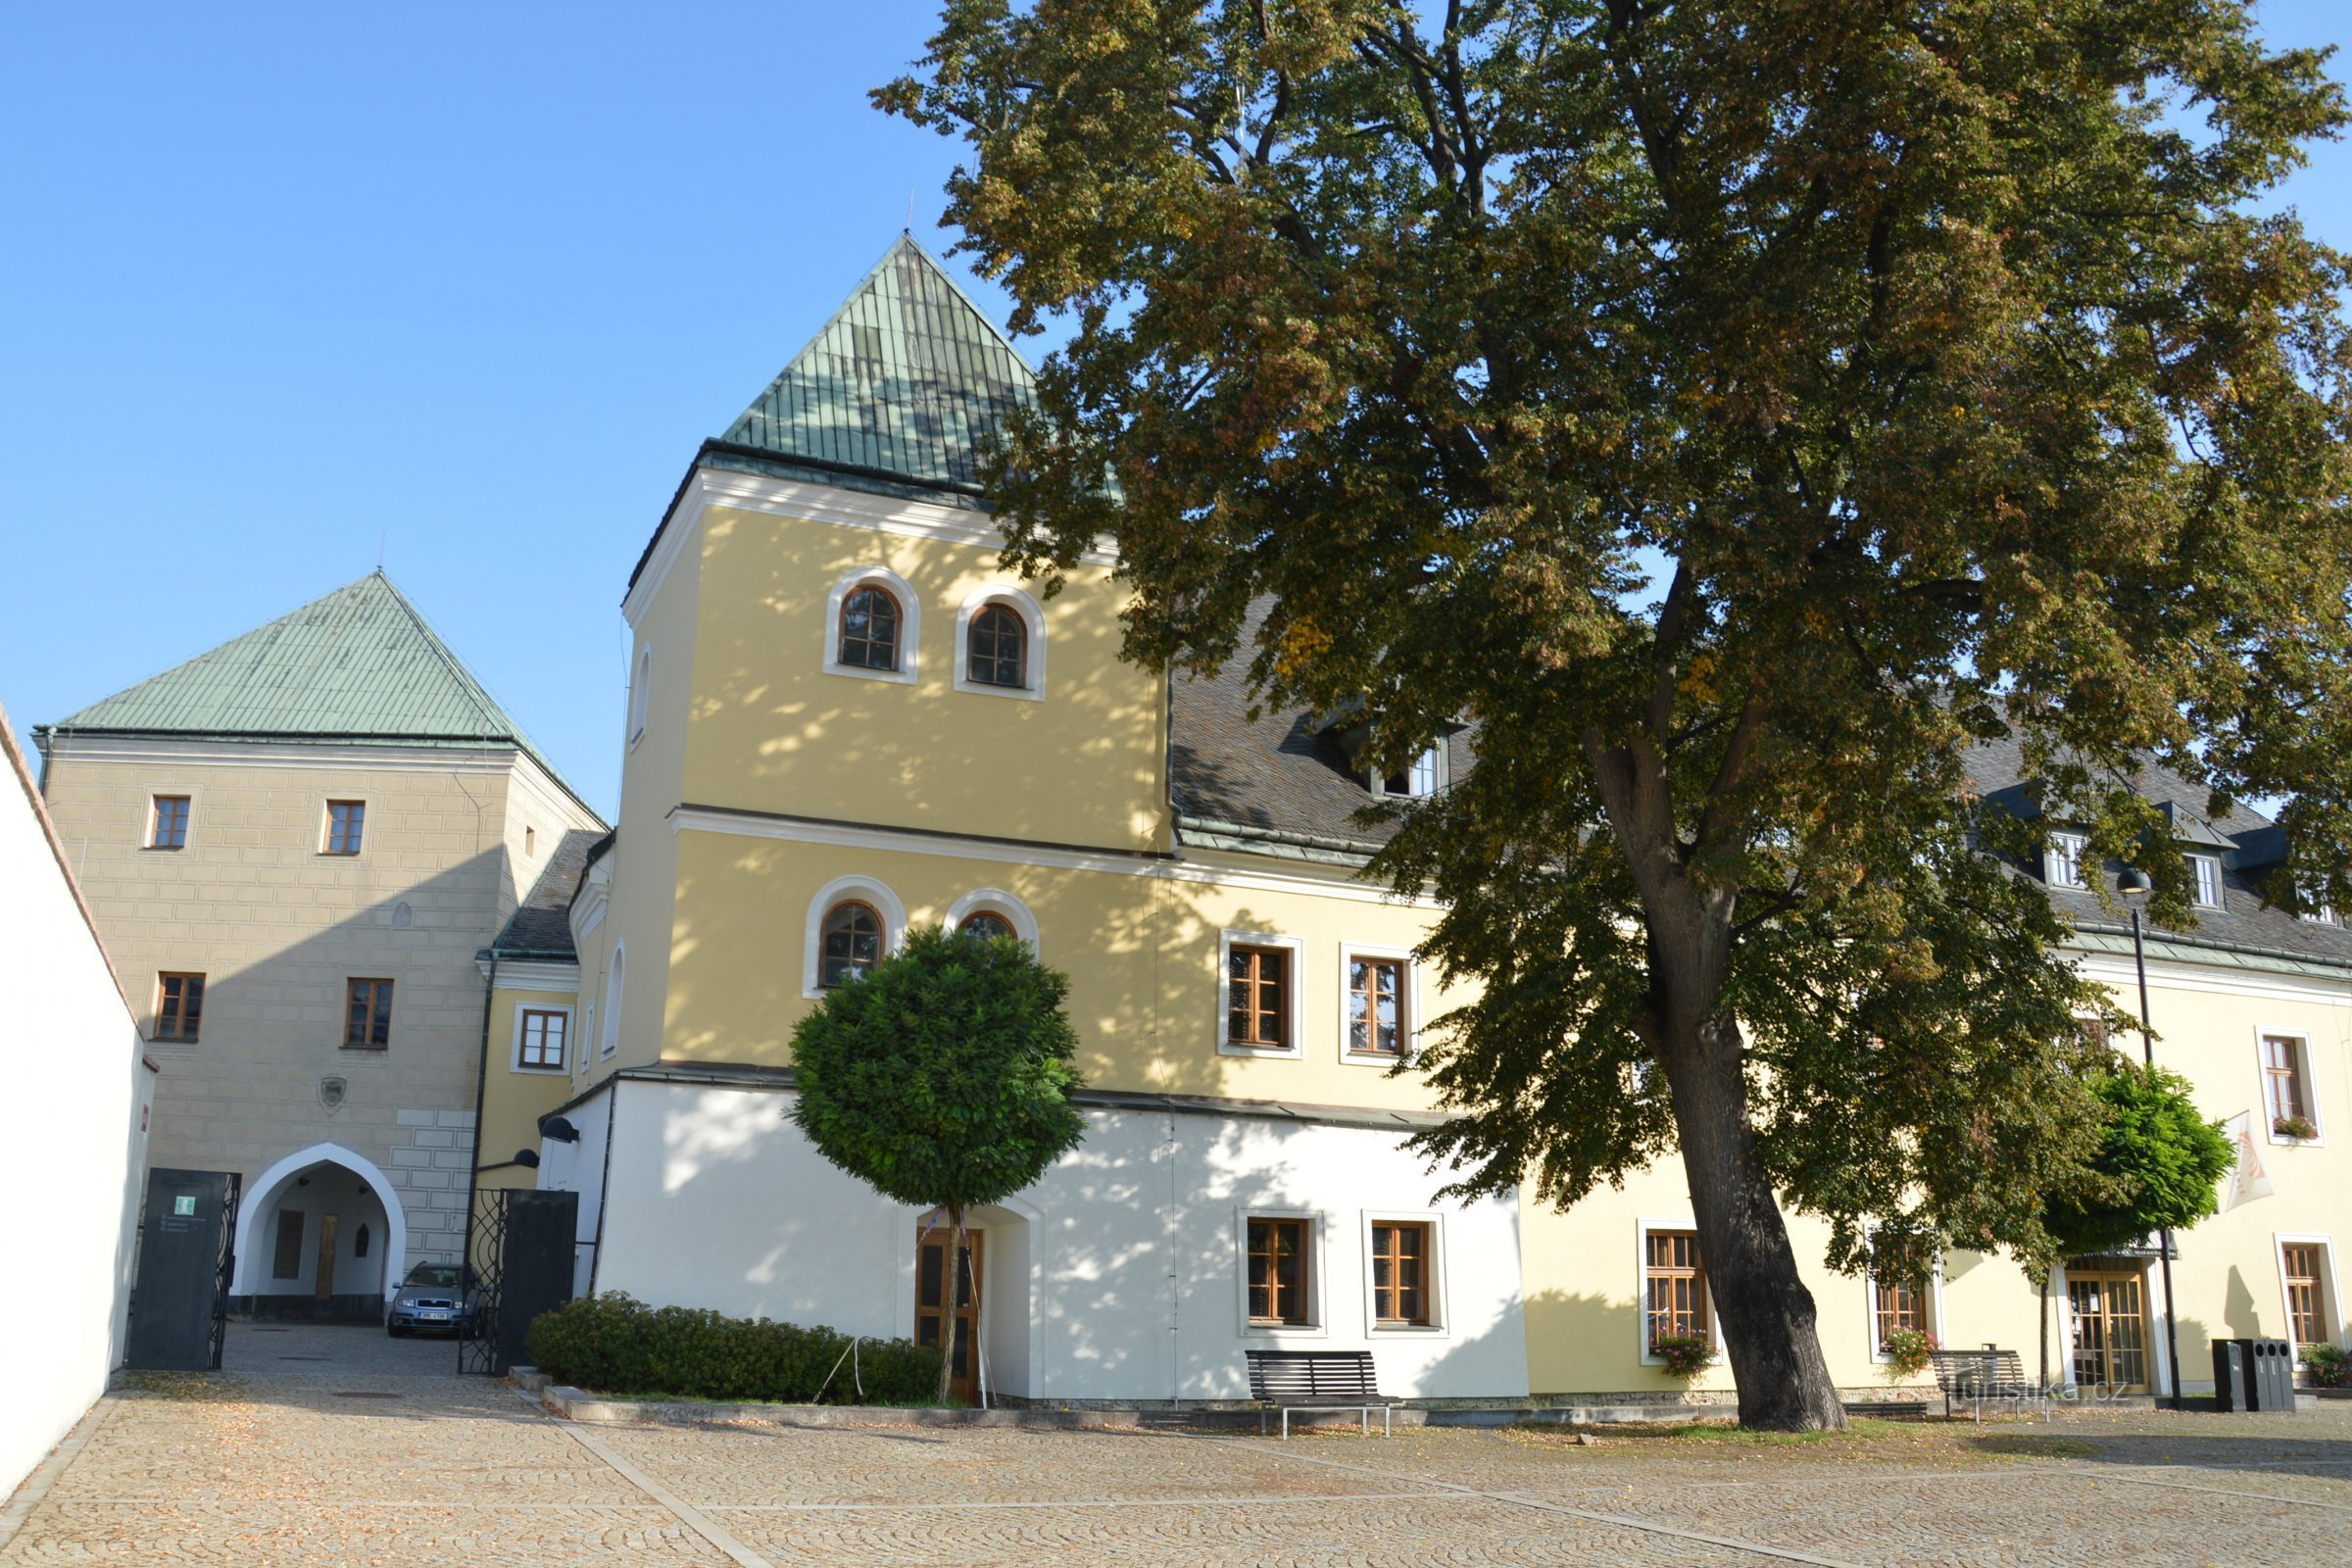 Velká Bystřice, parte del castillo